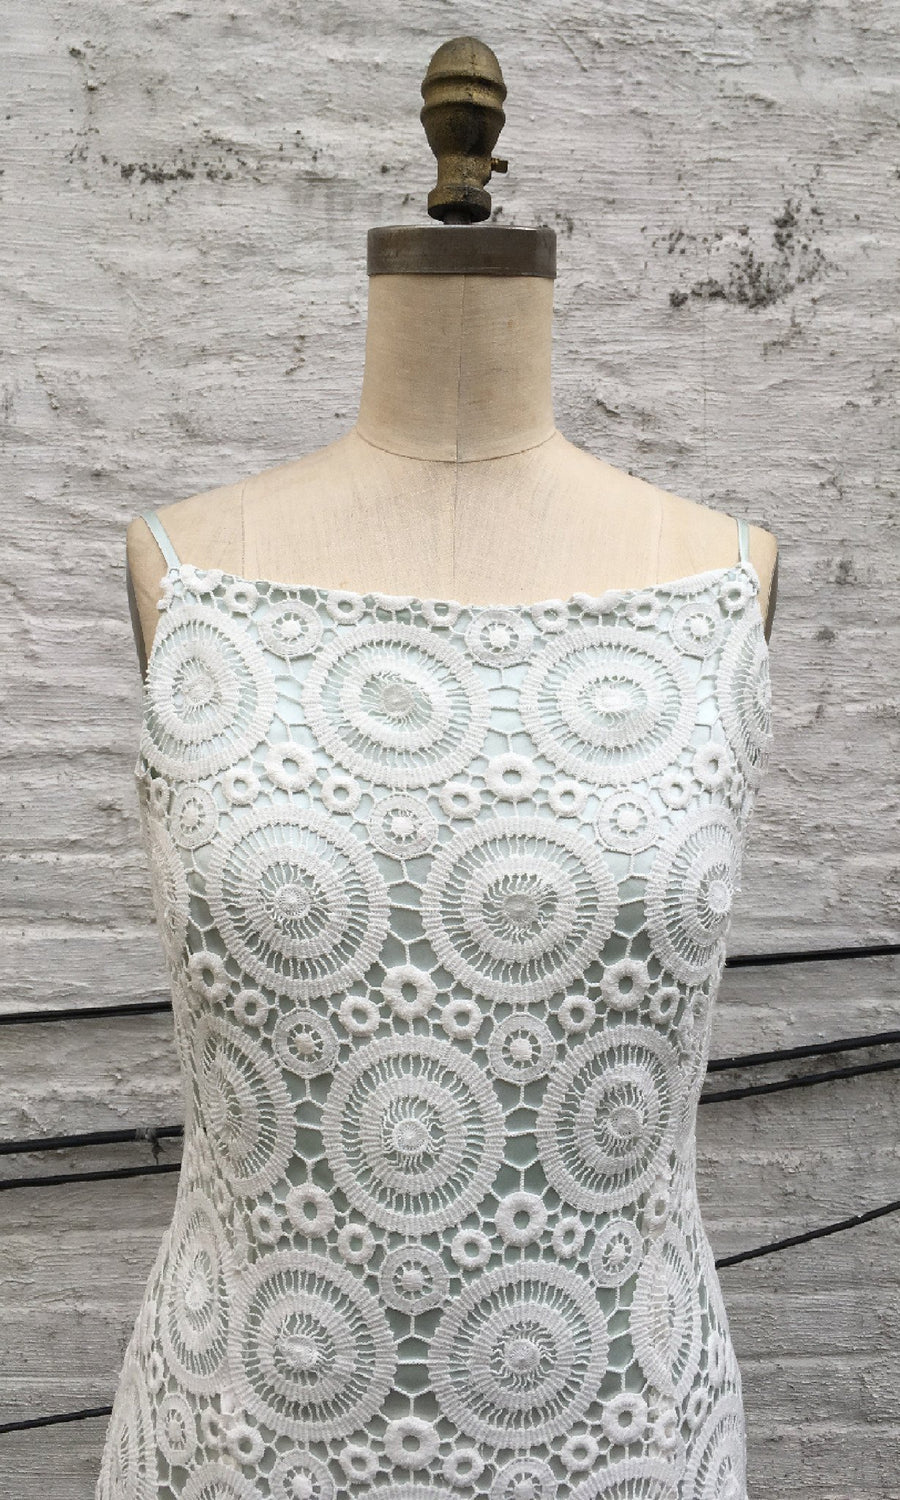 Crochet Lace Classic Sheath Dress, size Small